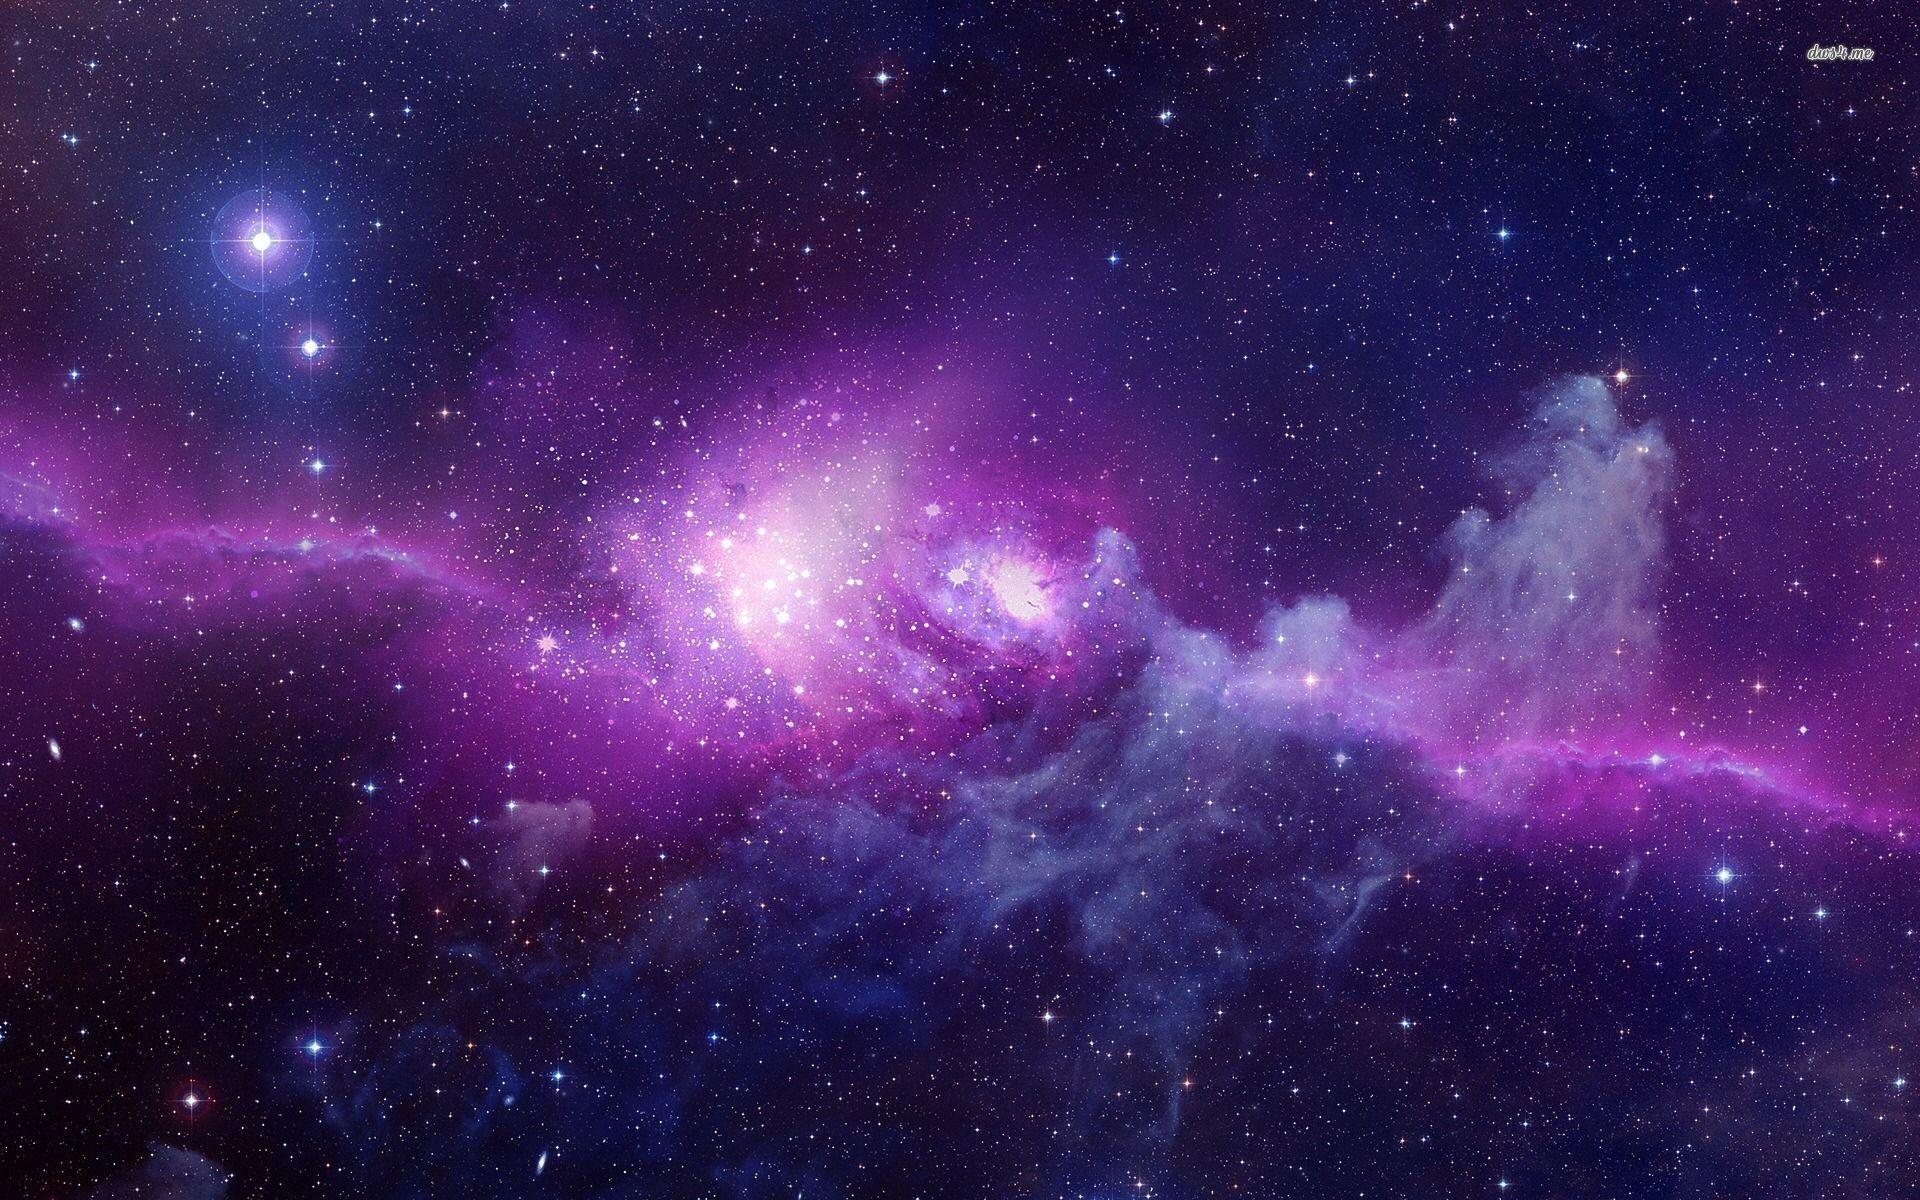 Hình nền vũ trụ tím: Màu tím lòe lửa trong bầu trời đêm bí ẩn và lãng mạn đến mức độ nào? Hãy cùng chiêm ngưỡng những hình nền vũ trụ tím đẹp, tạo cảm giác sự độc đáo, hiếm có cho màn hình của bạn.